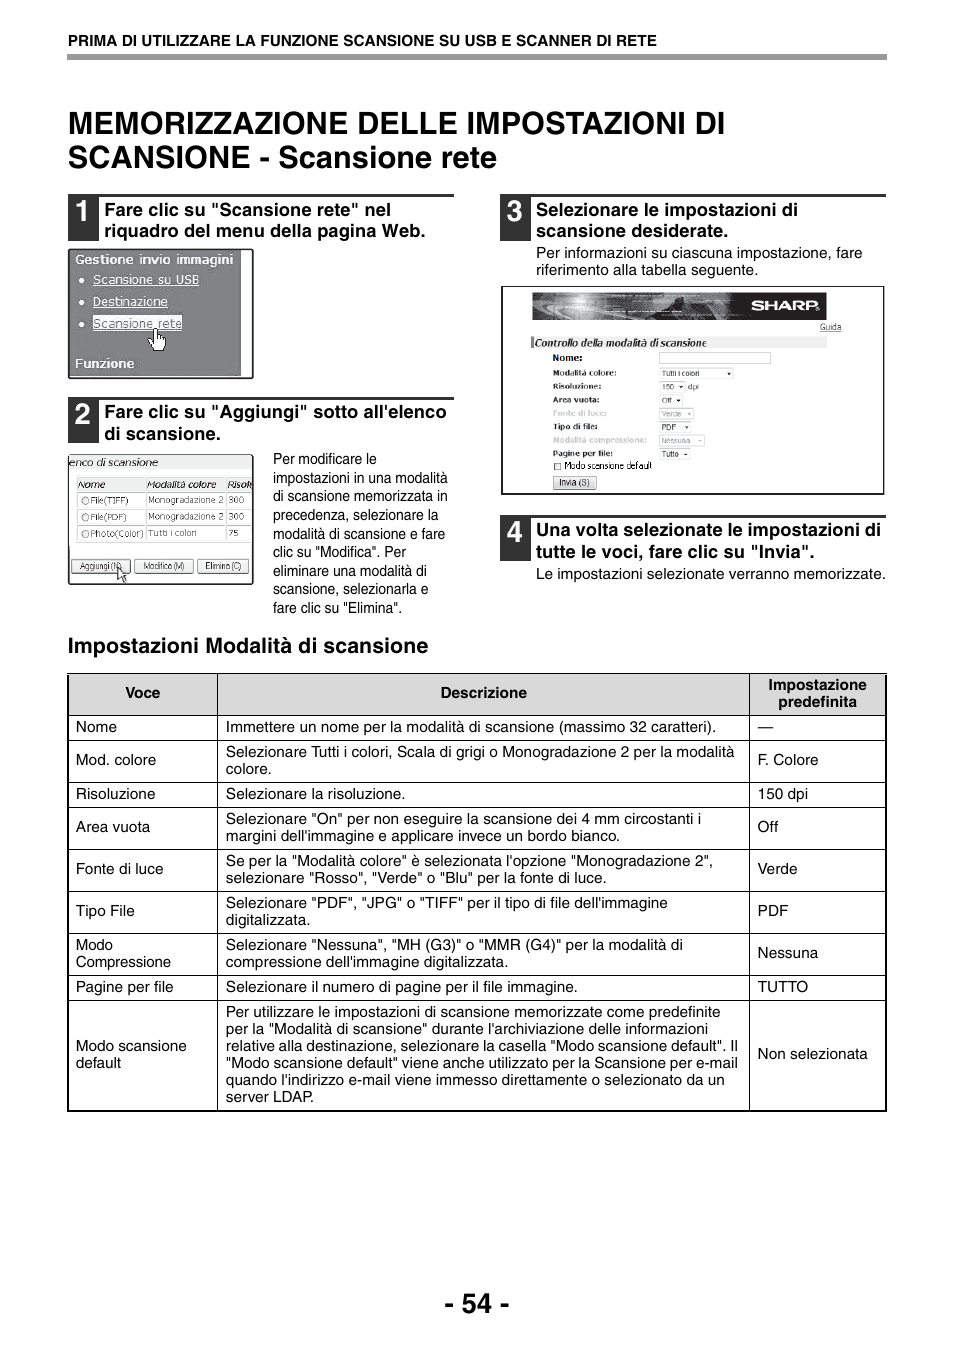 Memorizzazione delle impostazioni di, Scansione - scansione rete, P.54) | Impostazioni modalità di scansione | Sharp MX-B201D Manuale d'uso | Pagina 54 / 80